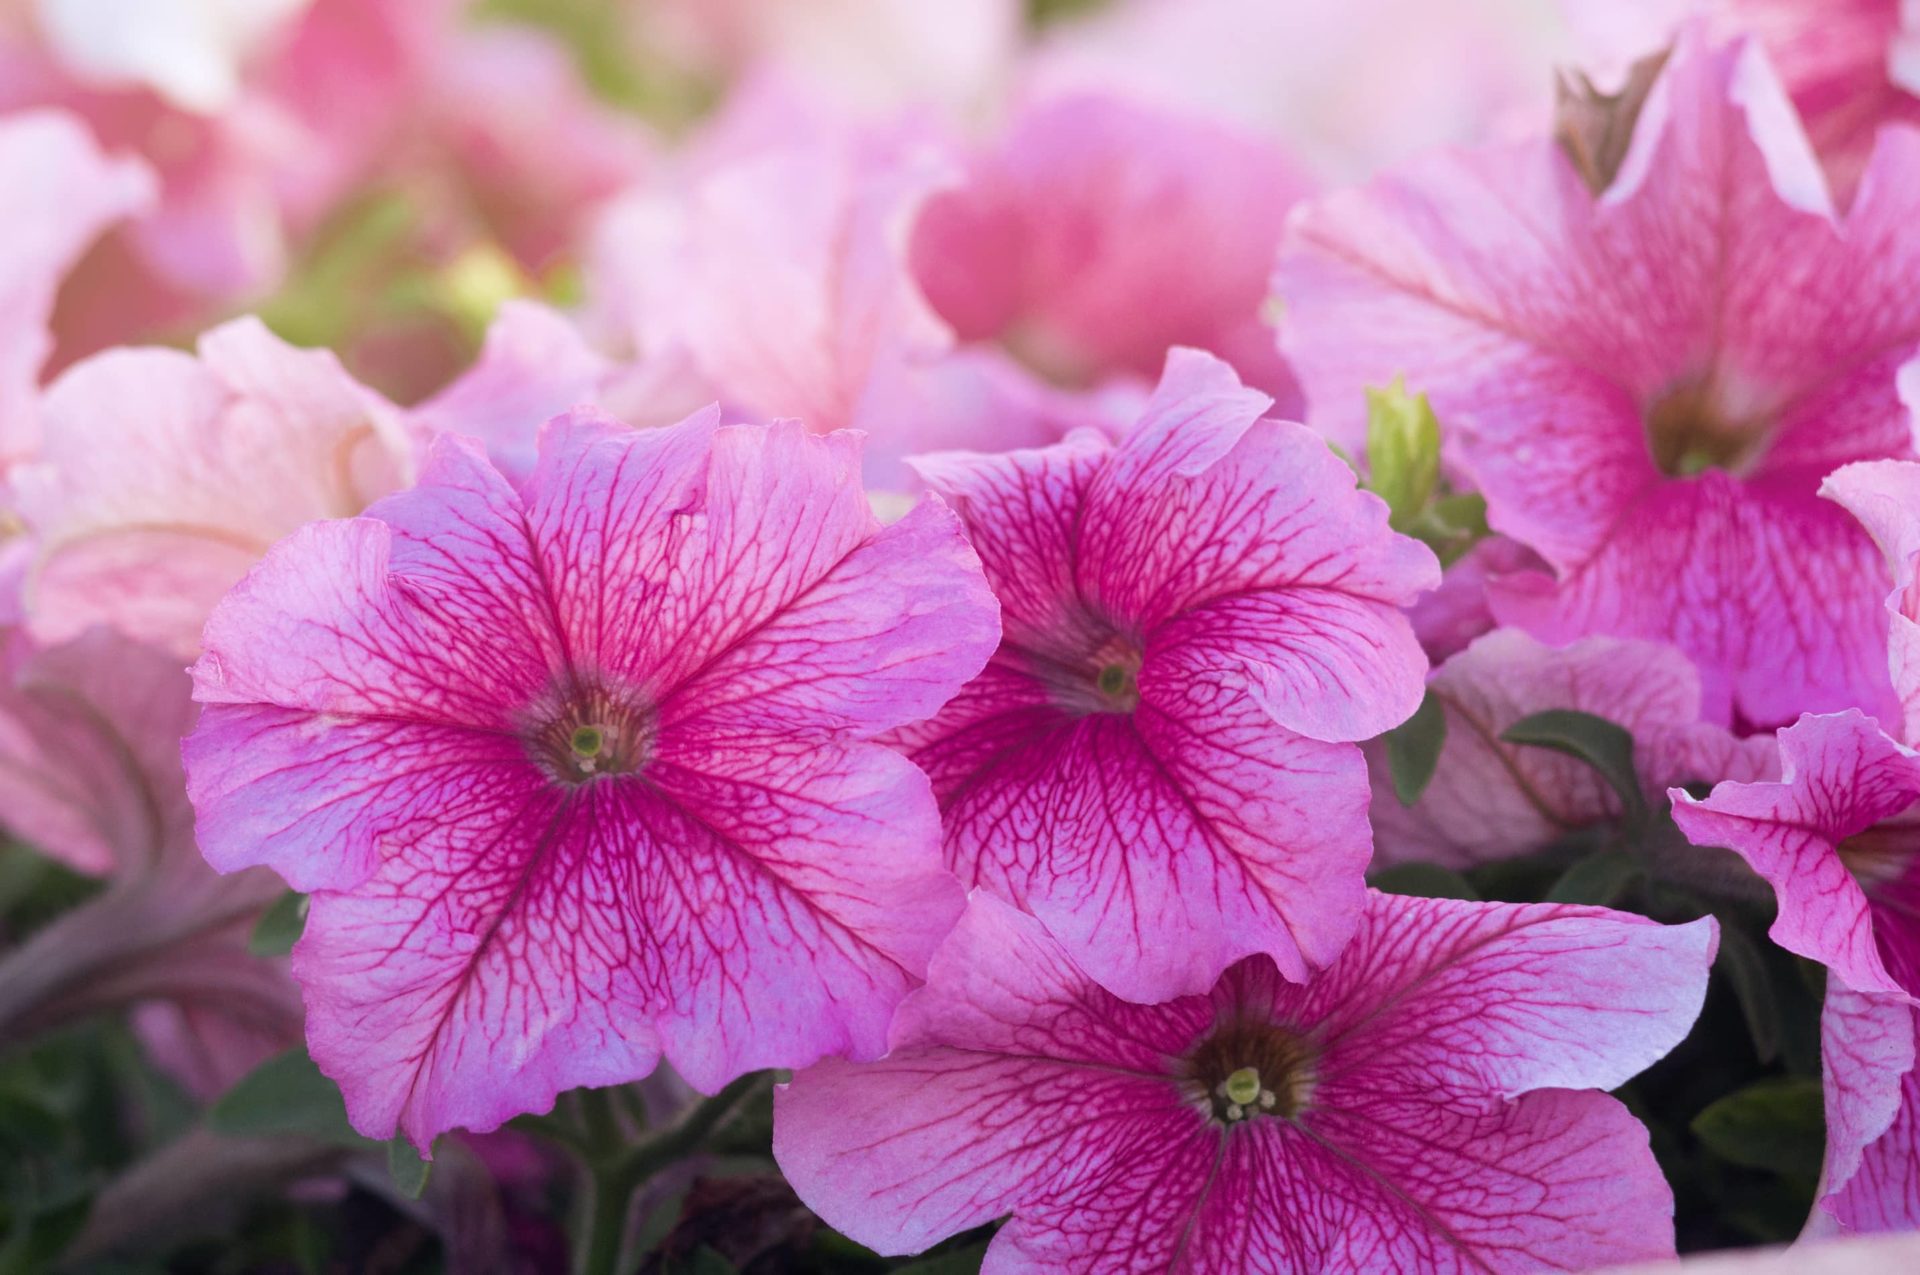 Closeup of pink petunia flowers.